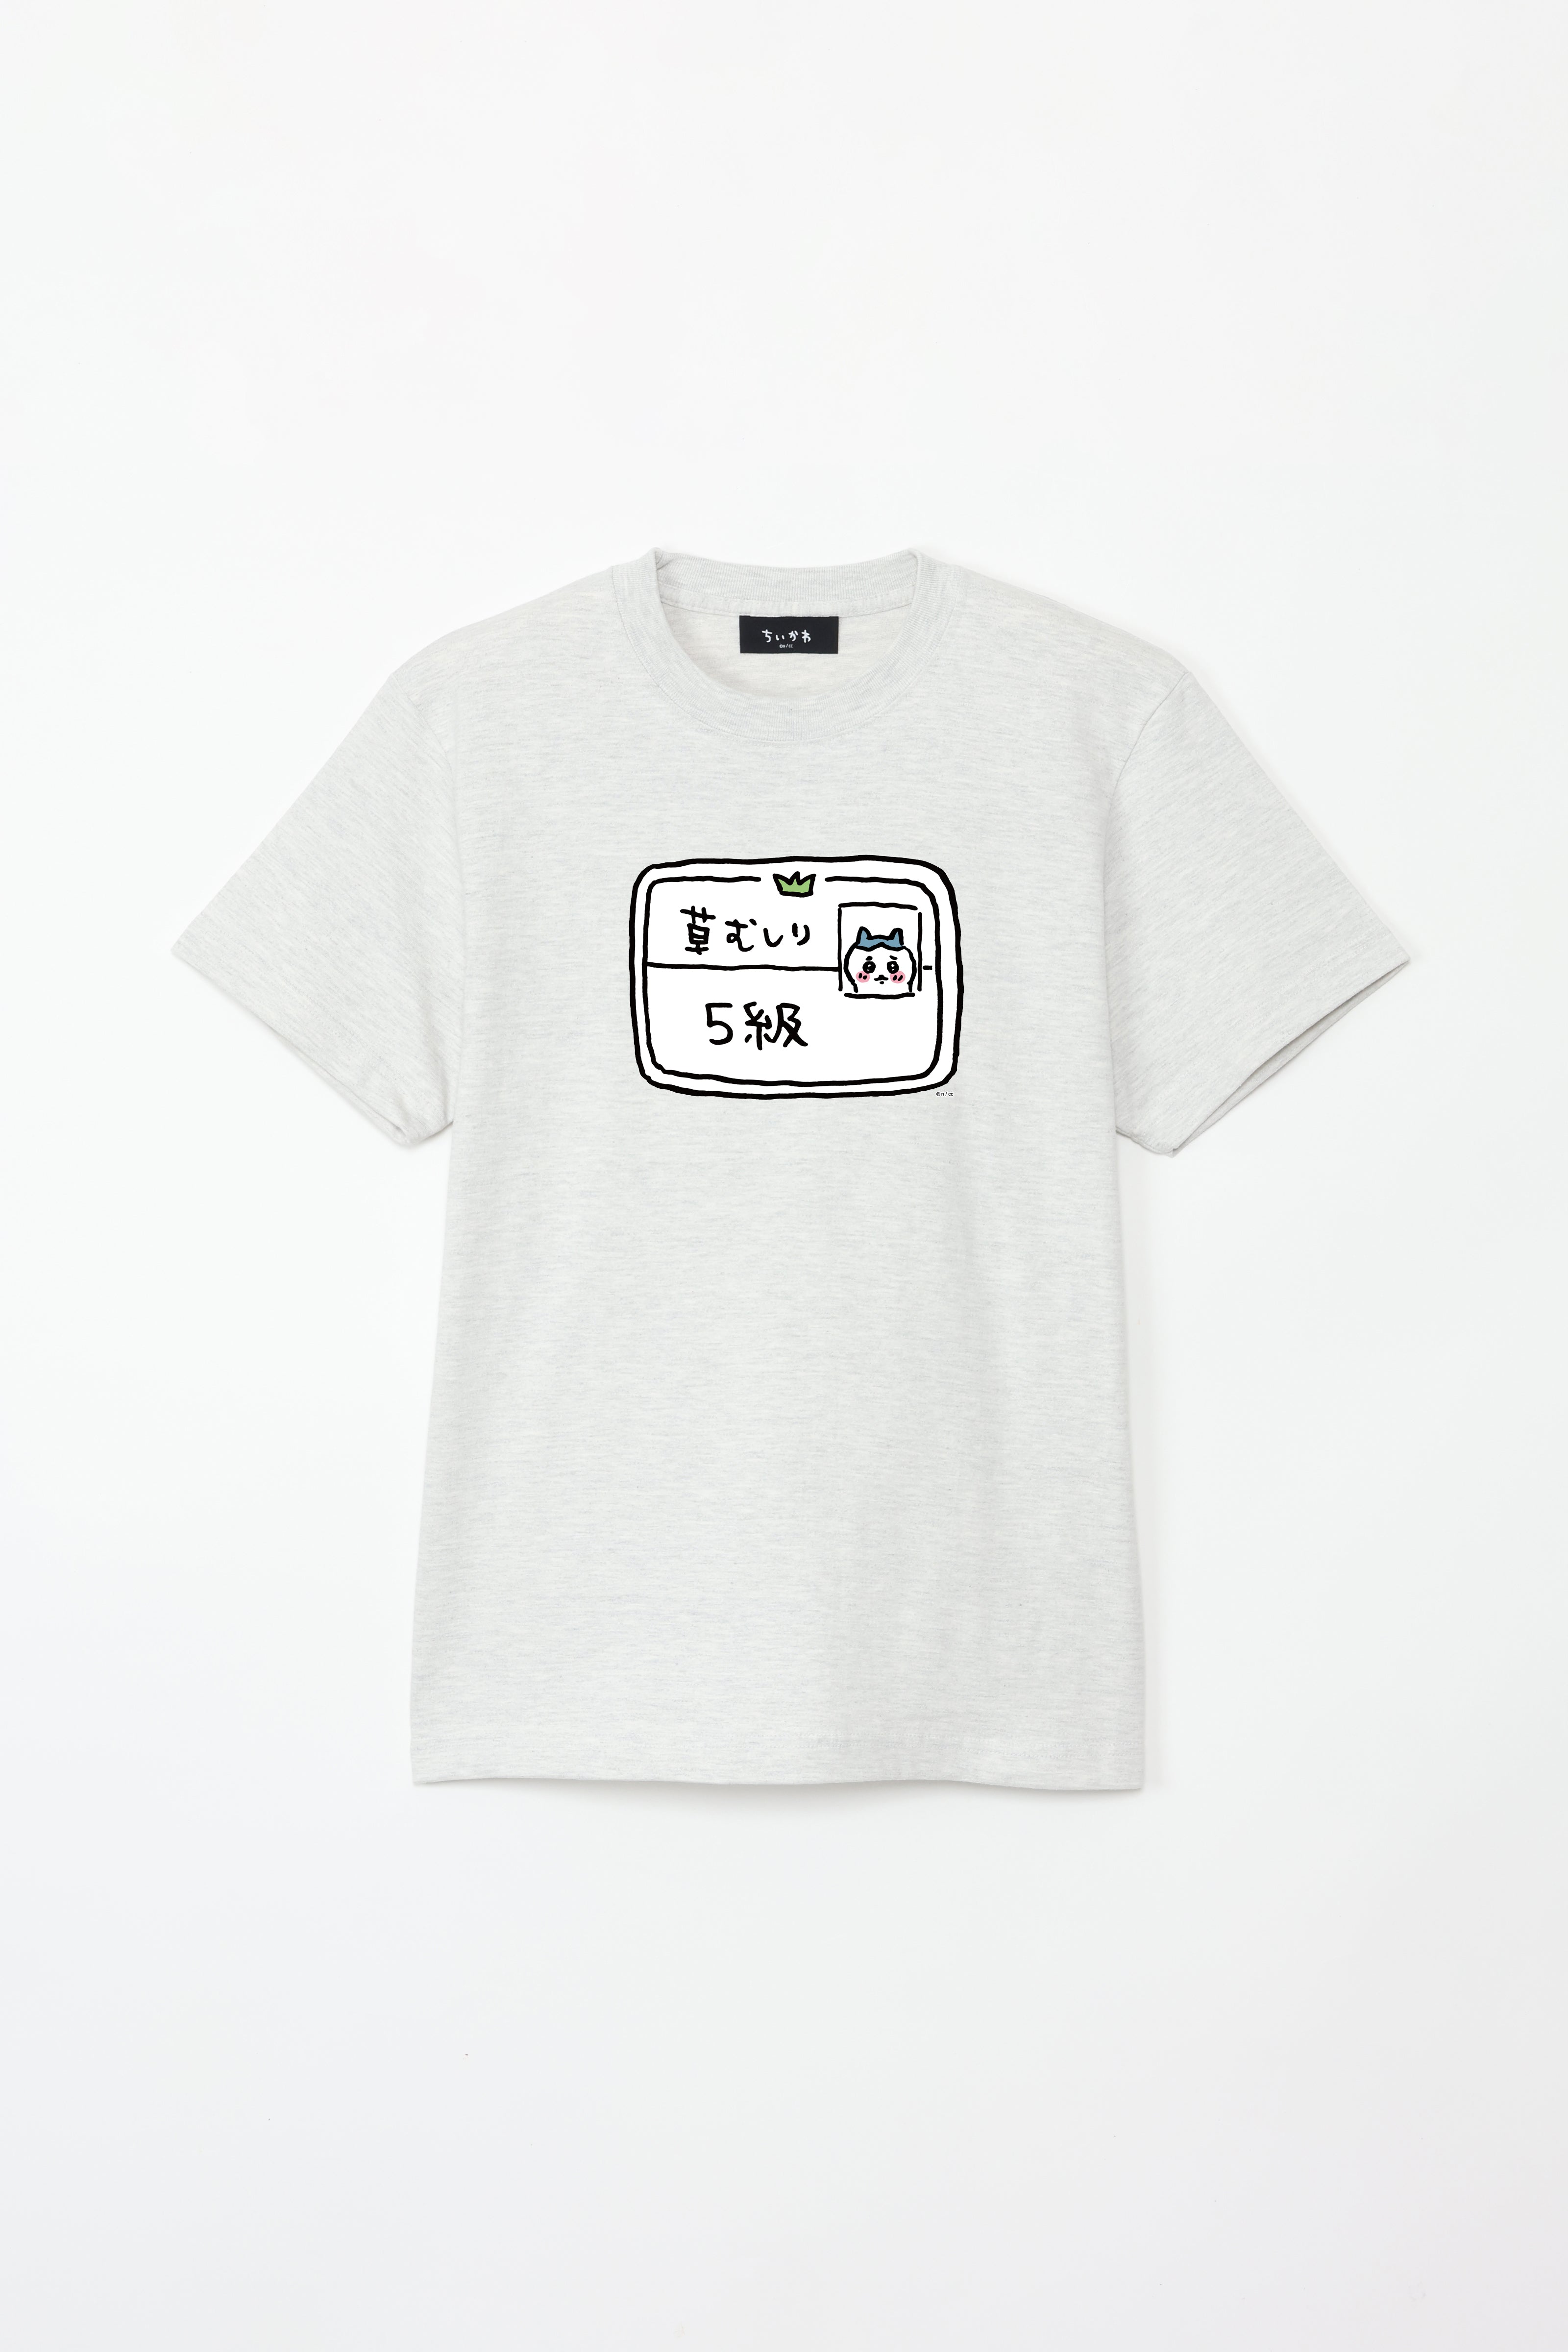 ちいかわ 5級 Tシャツ – Talking Heads ODM